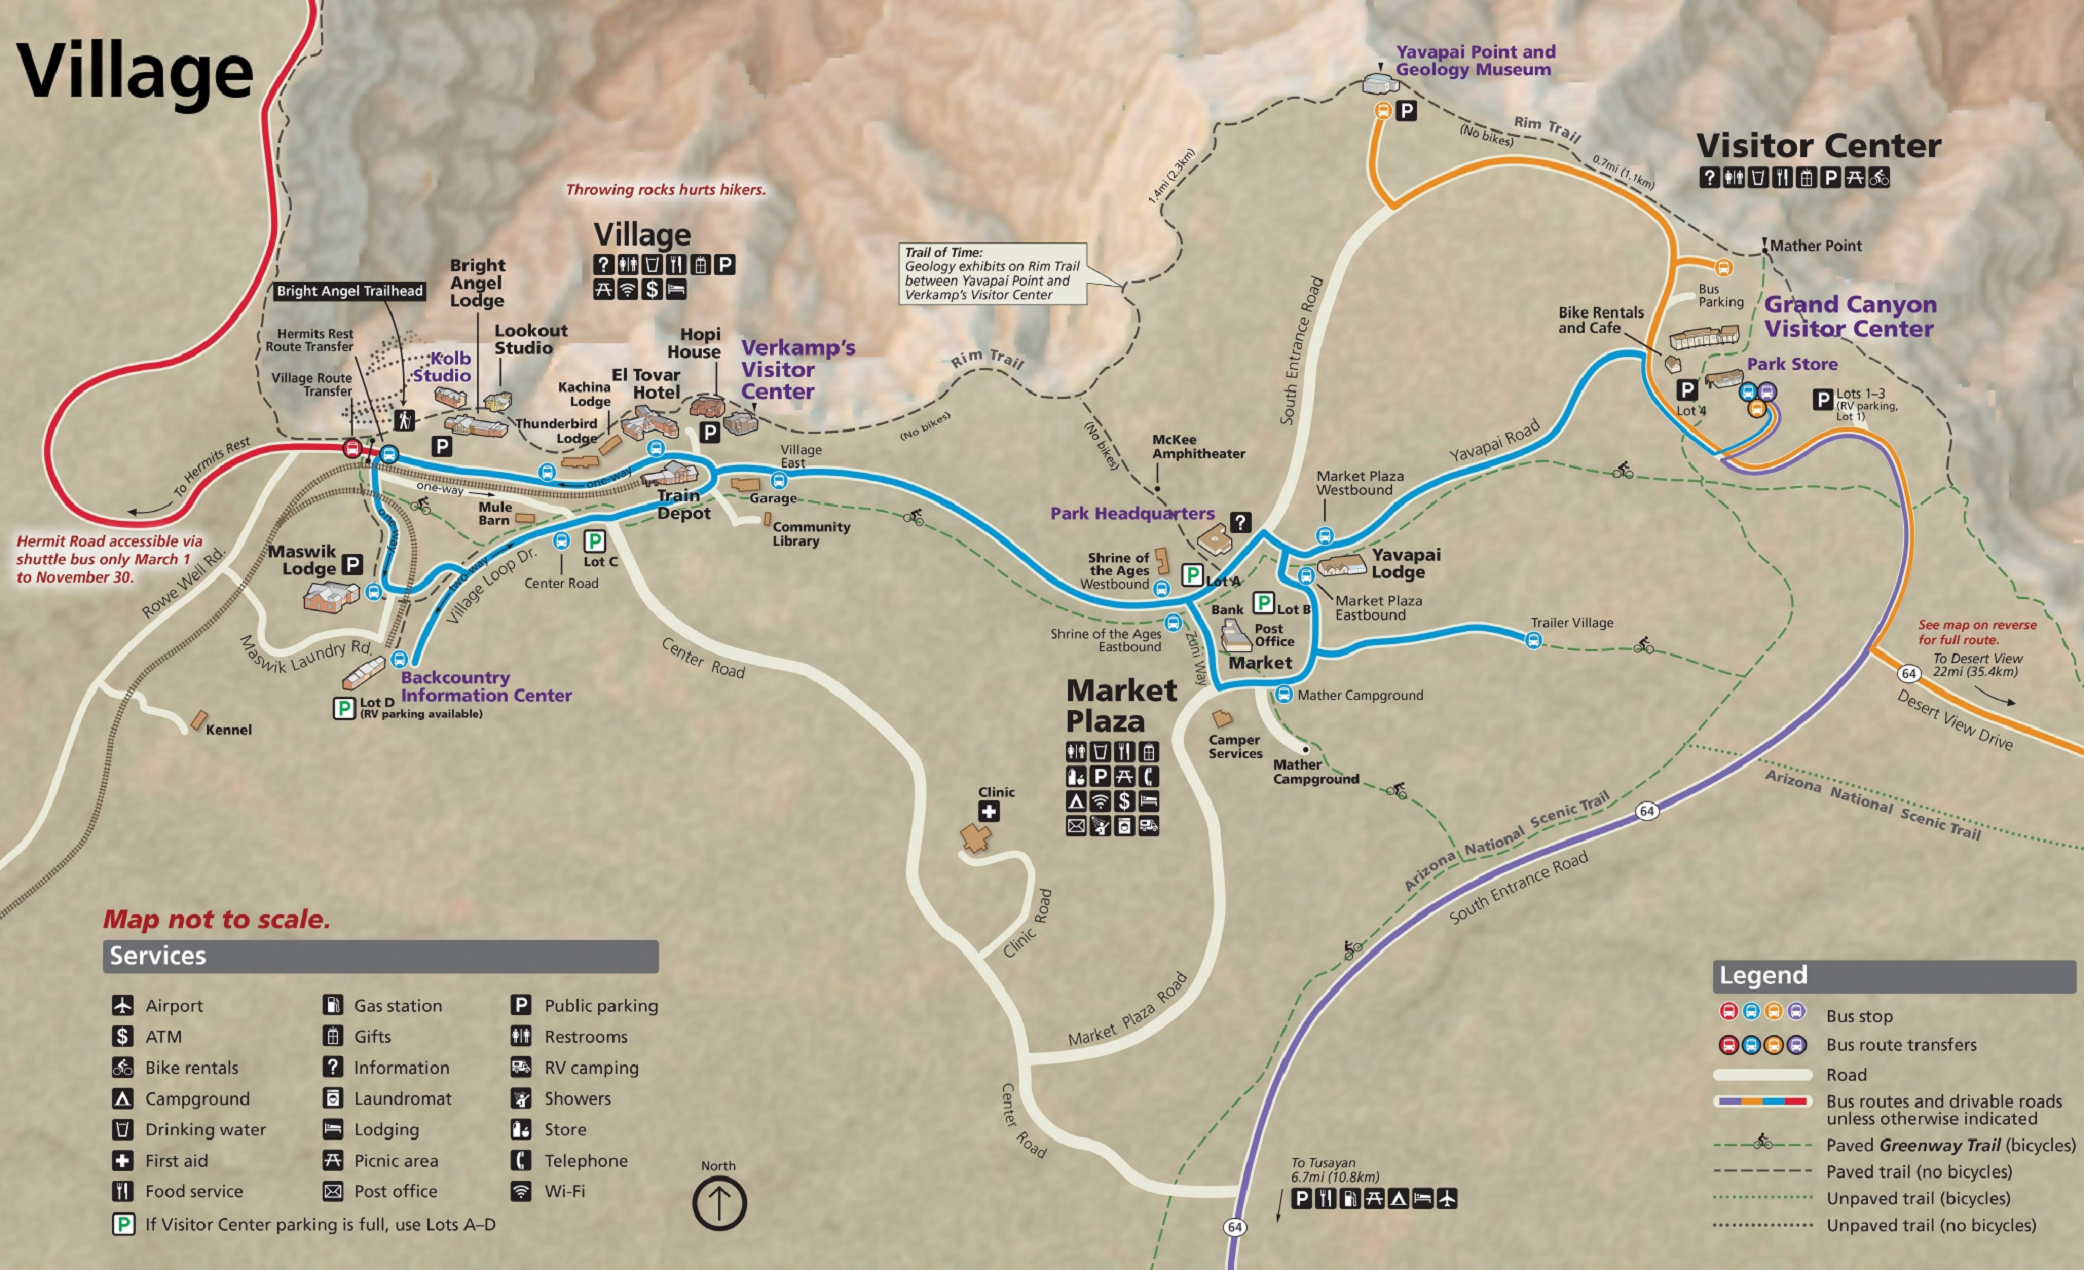 Карта Гранд-Каньона с автобусными маршрутами и основными обзорными точками. Я выбрала Рим⁠-⁠Трейл — эта тропа обозначена черным пунктиром в верхней части карты. Источник: National Park Service